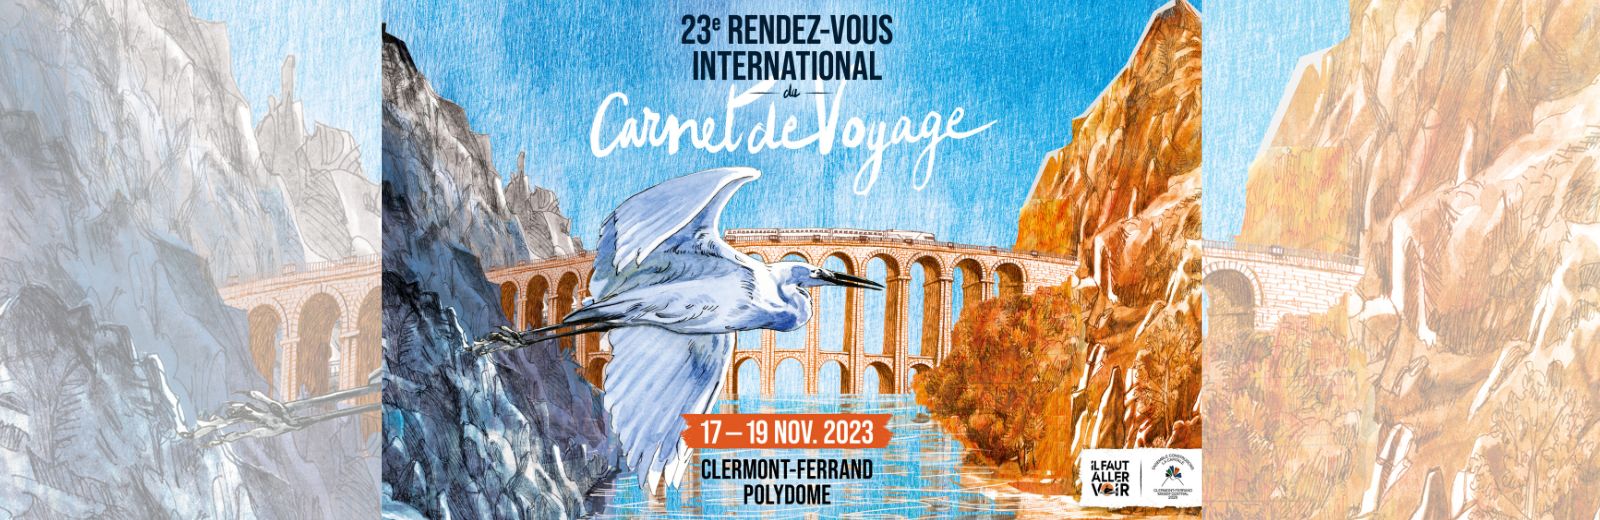 23ème Rendez-vous International Du Carnet de voyage (17-19 novembre)